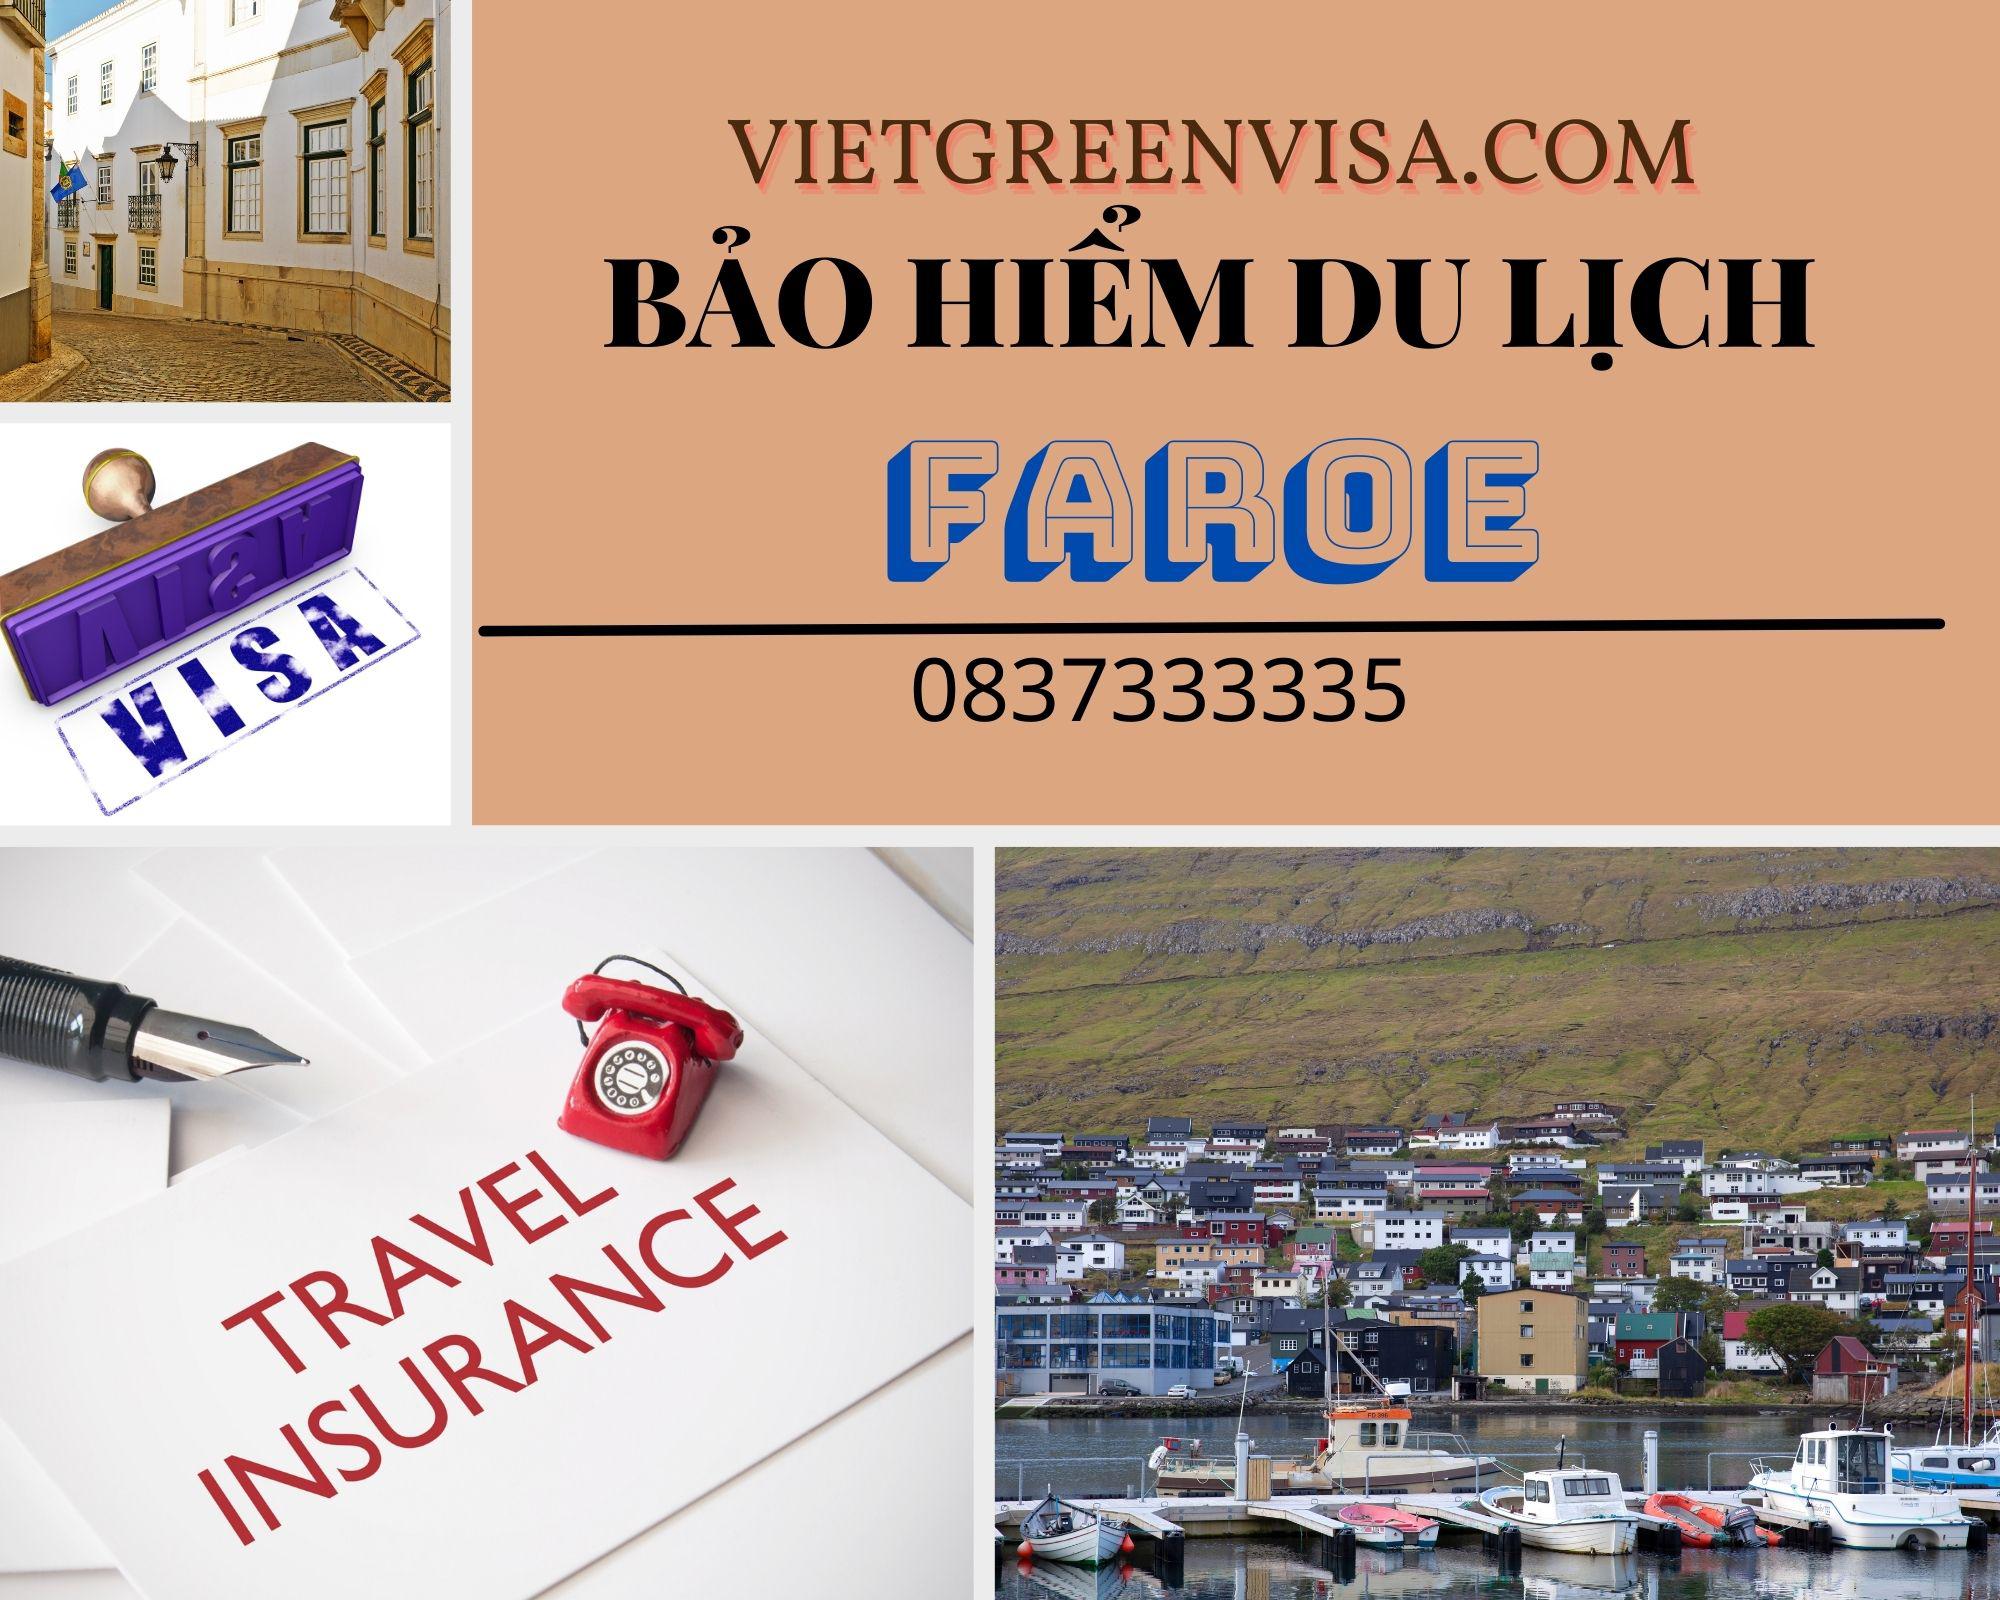 Dịch vụ bảo hiểm du lịch xin visa Faroe giá rẻ nhất